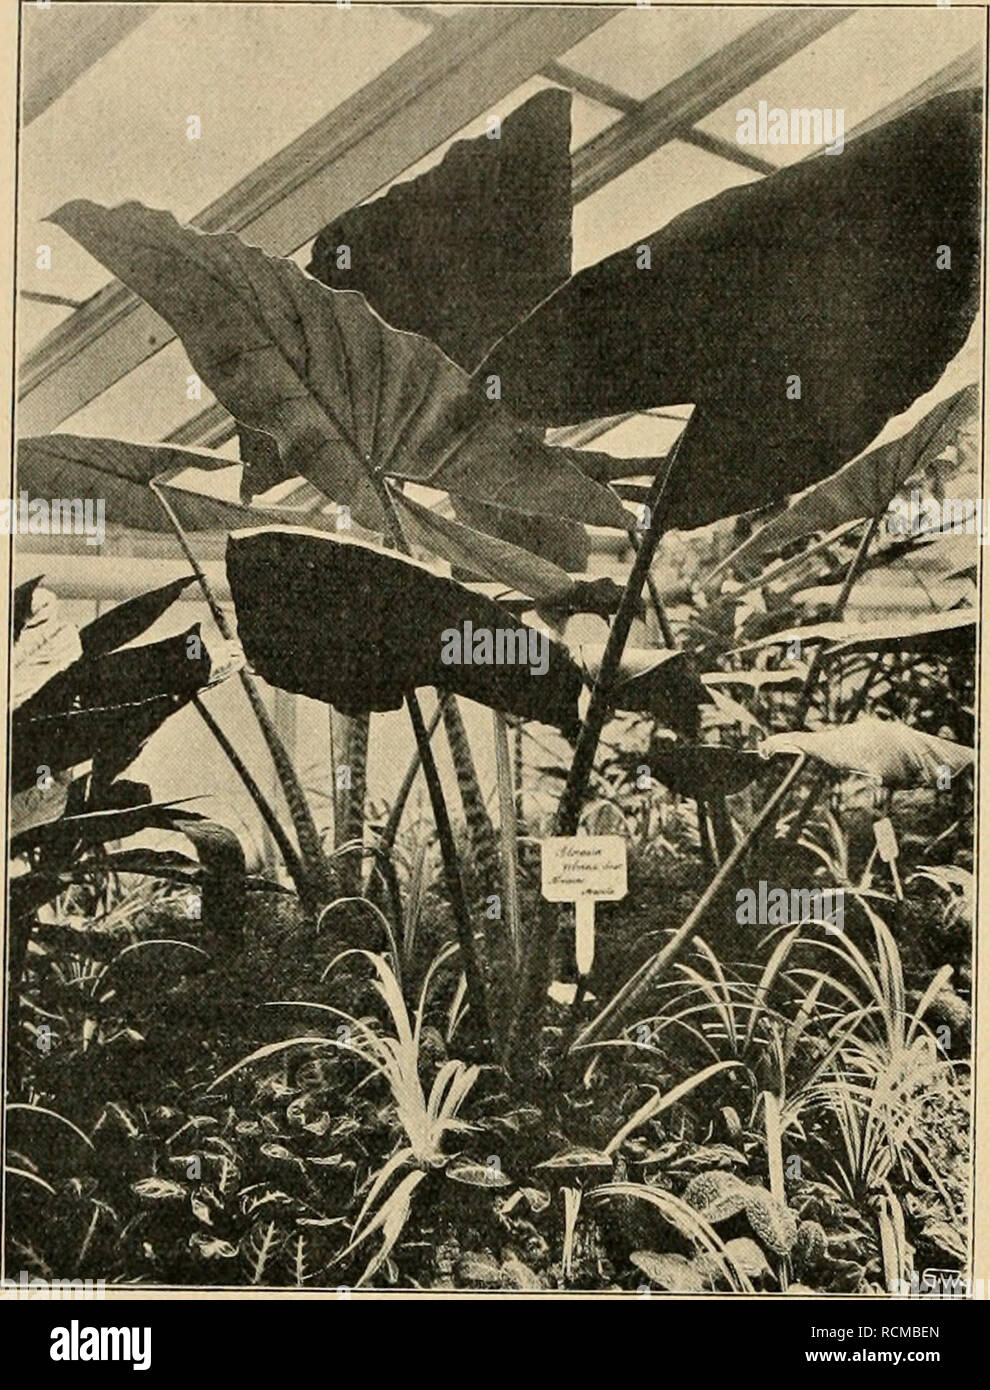 . Die Gartenwelt. Gardening. 340 Die G a r t e 11 w e 11. XV, 25. Alocasia zebrina. zu beschreiben, man kann sie vielleicht am ehesten noch als grünlich purpurbraunrot mit Metallglanz bezeichnen. Diese Art geht auch unter dem Namen Alocasia metallica Hook, (nicht Schott.) und wurde im Bot. Mag., Tafel 5190, ab- gebildet. Sie wurde 1859 aus Borneo eingeführt und ist wie die vorhergehende eine ursprüngliche Art und nicht eine Gartenzüchtung, wie man leicht vermuten könnte. Alocasia intermedia hört. (Abb. Seite 342 unten), ist eine Kreuzung, hervorgegangen aus A. Veitchii Schott., welche eine For Stock Photo